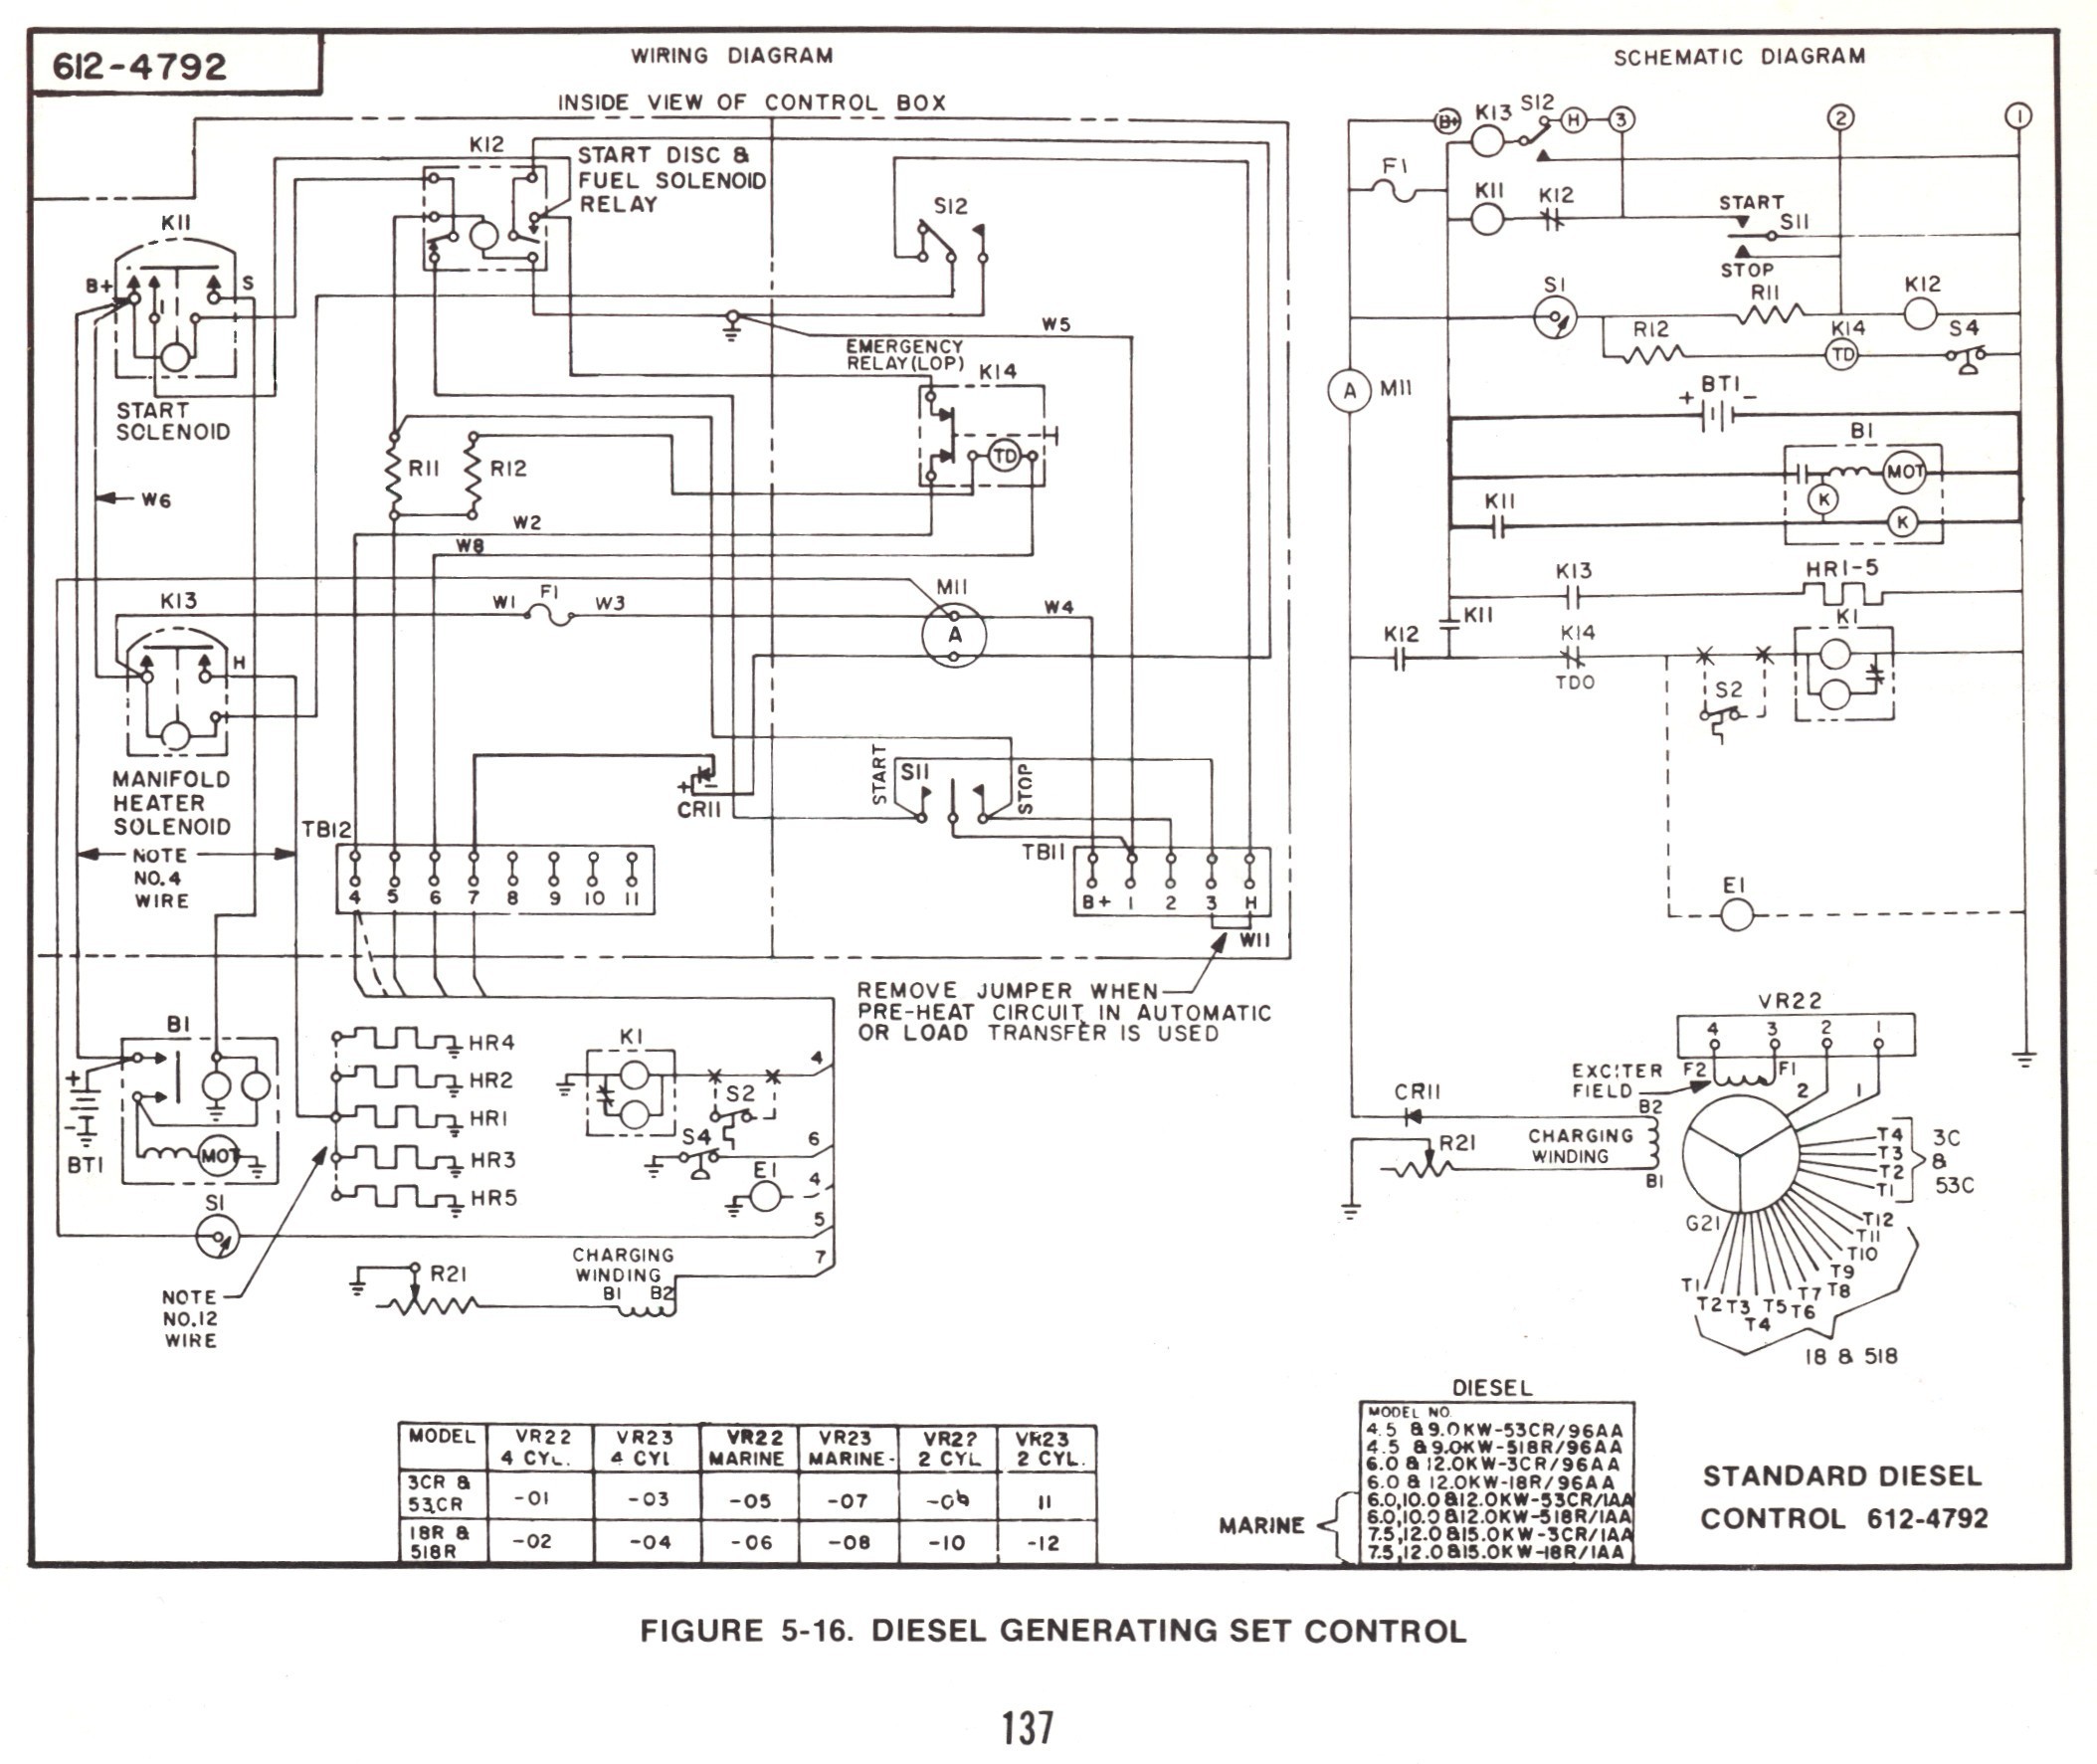 Motorhome Generator Wiring Diagram Best Wiring Diagram An Generator Save An Emerald 1 Genset Wiring